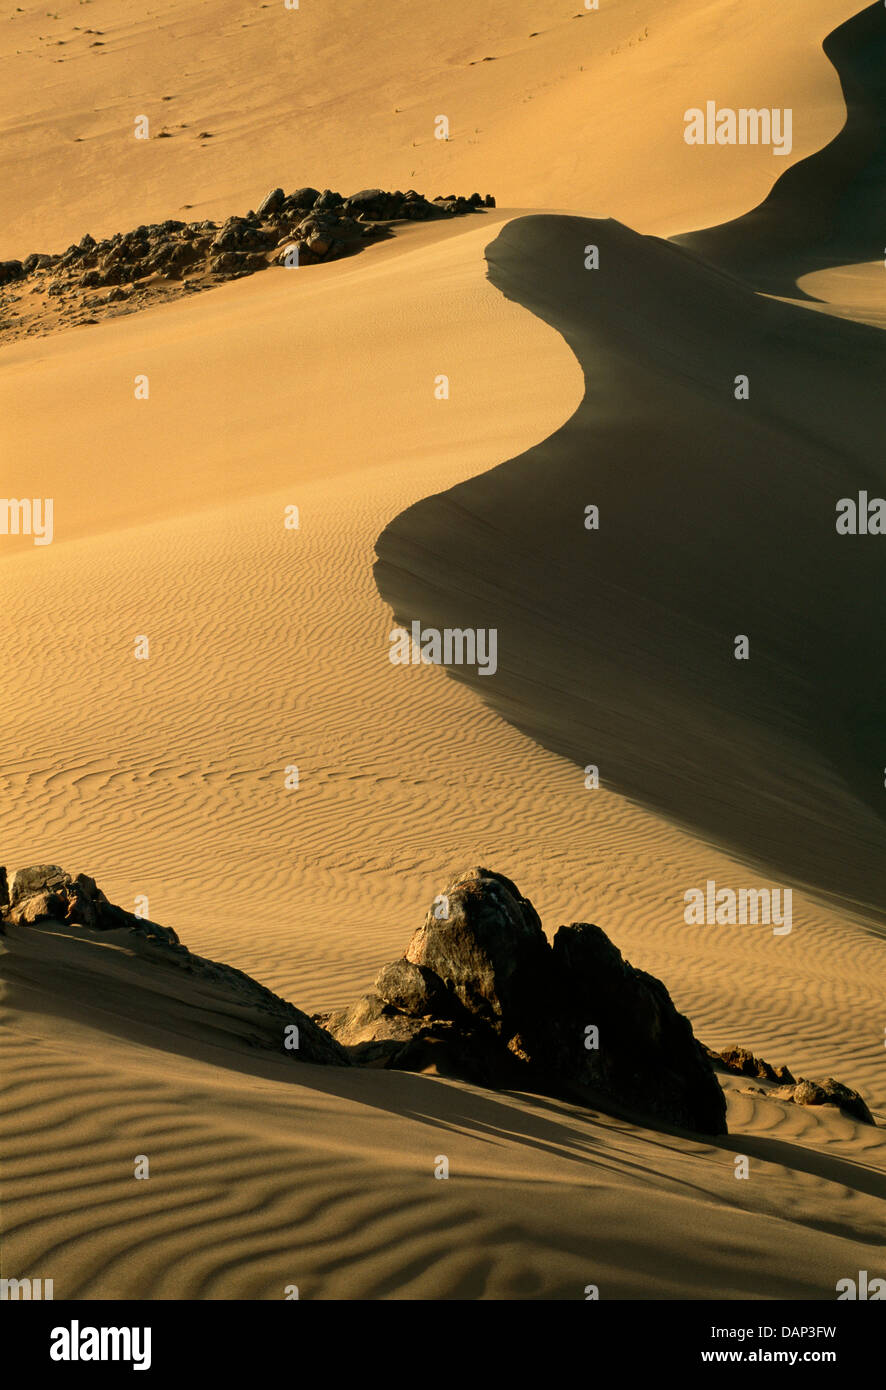 Dunes in the Skeleton Coast area, Namibia Stock Photo